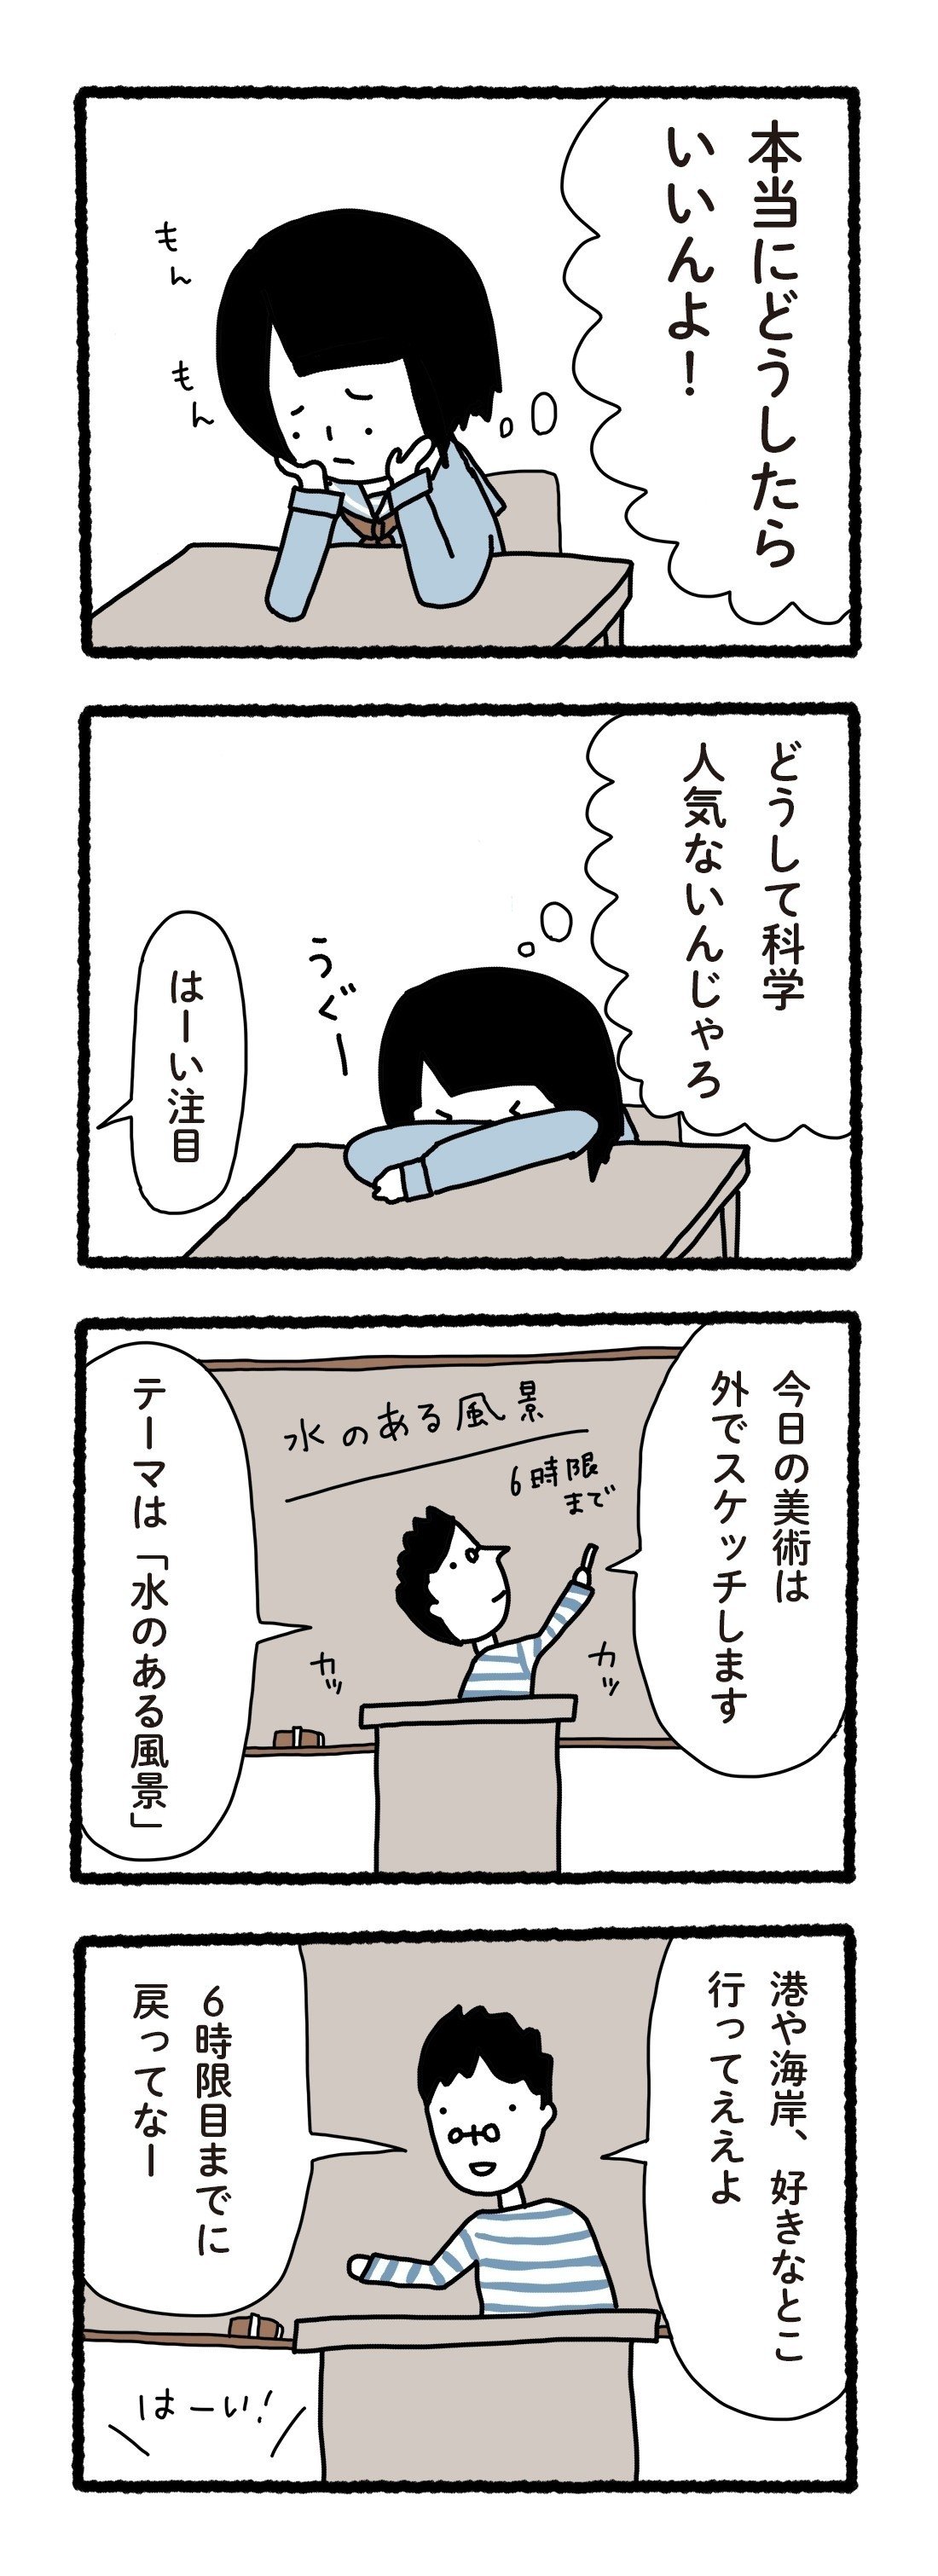 科学漫画001_10岡山